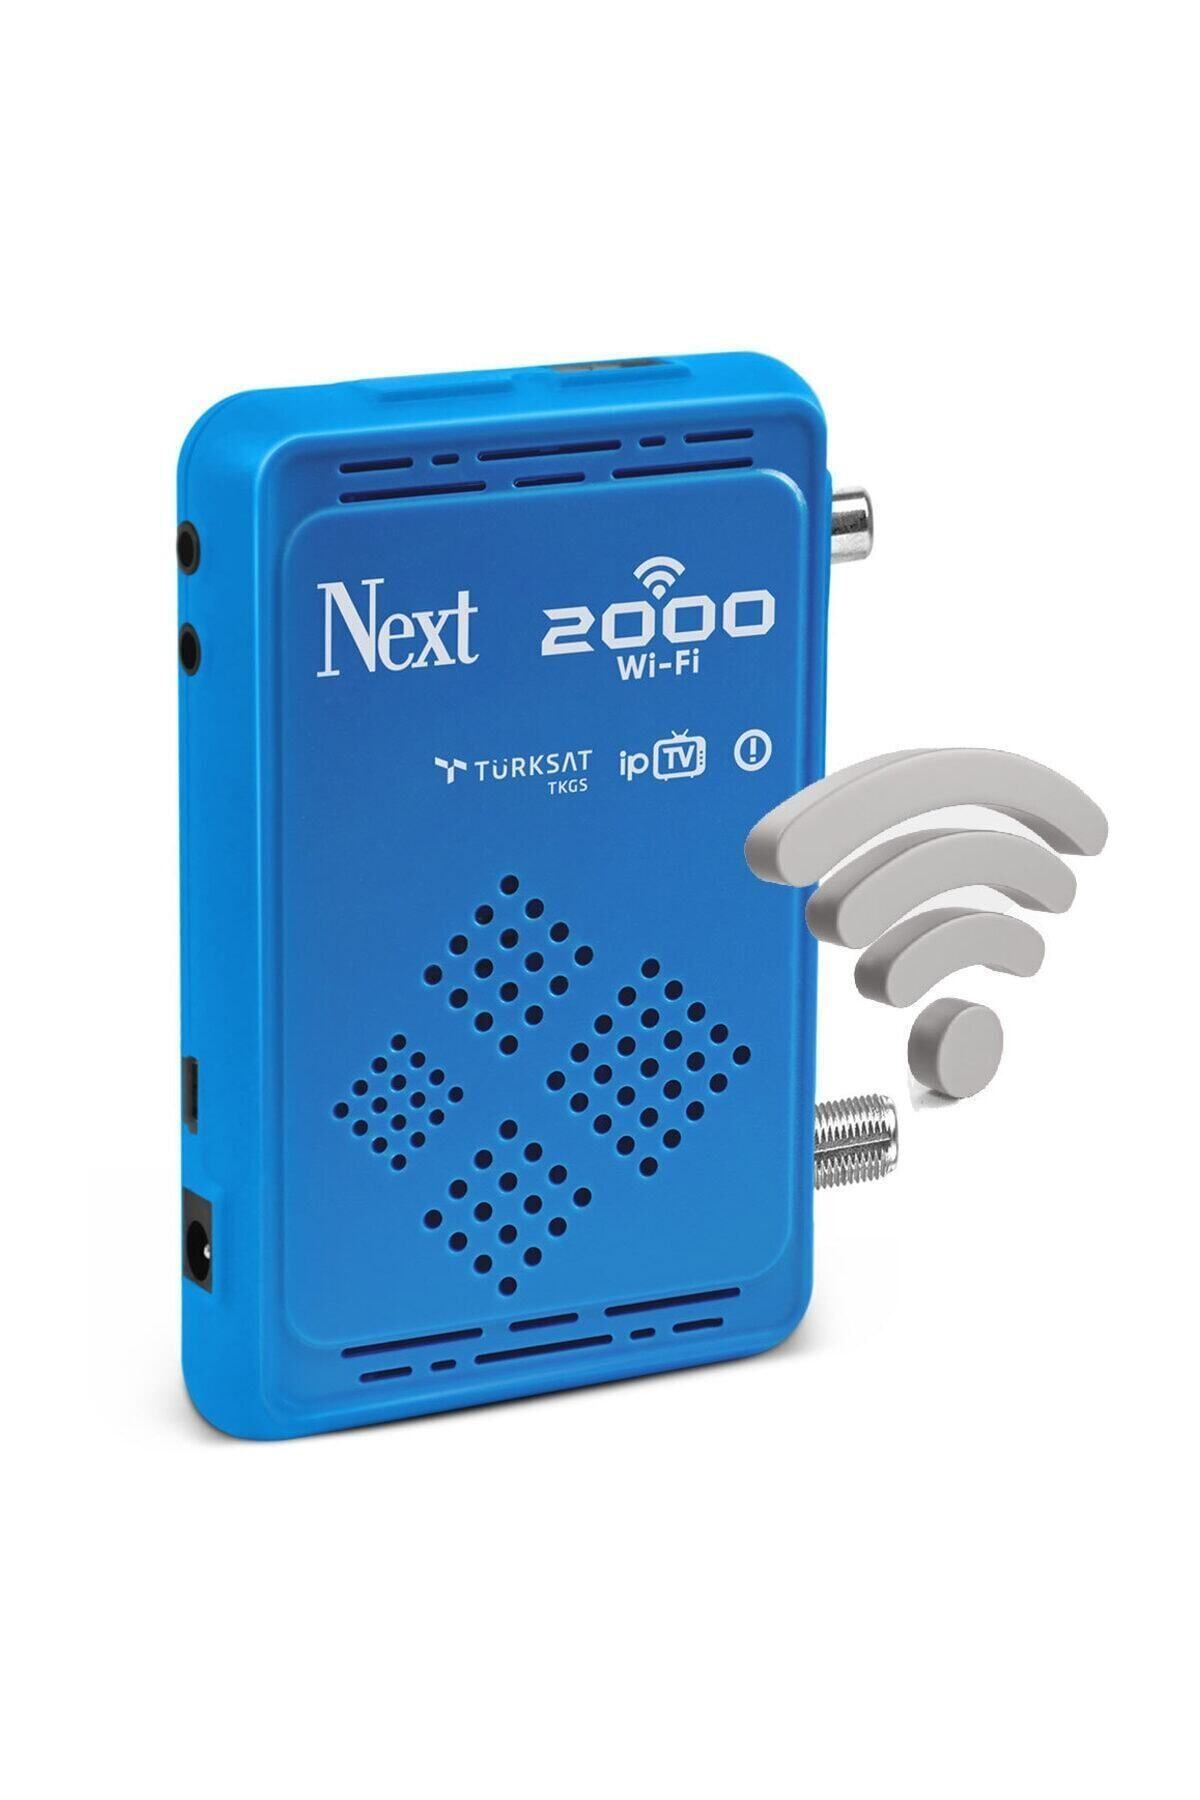 Next 2000 Çanaklı - Çanaksız Dahili Wifi-s Full Hd Uydu Alıcı